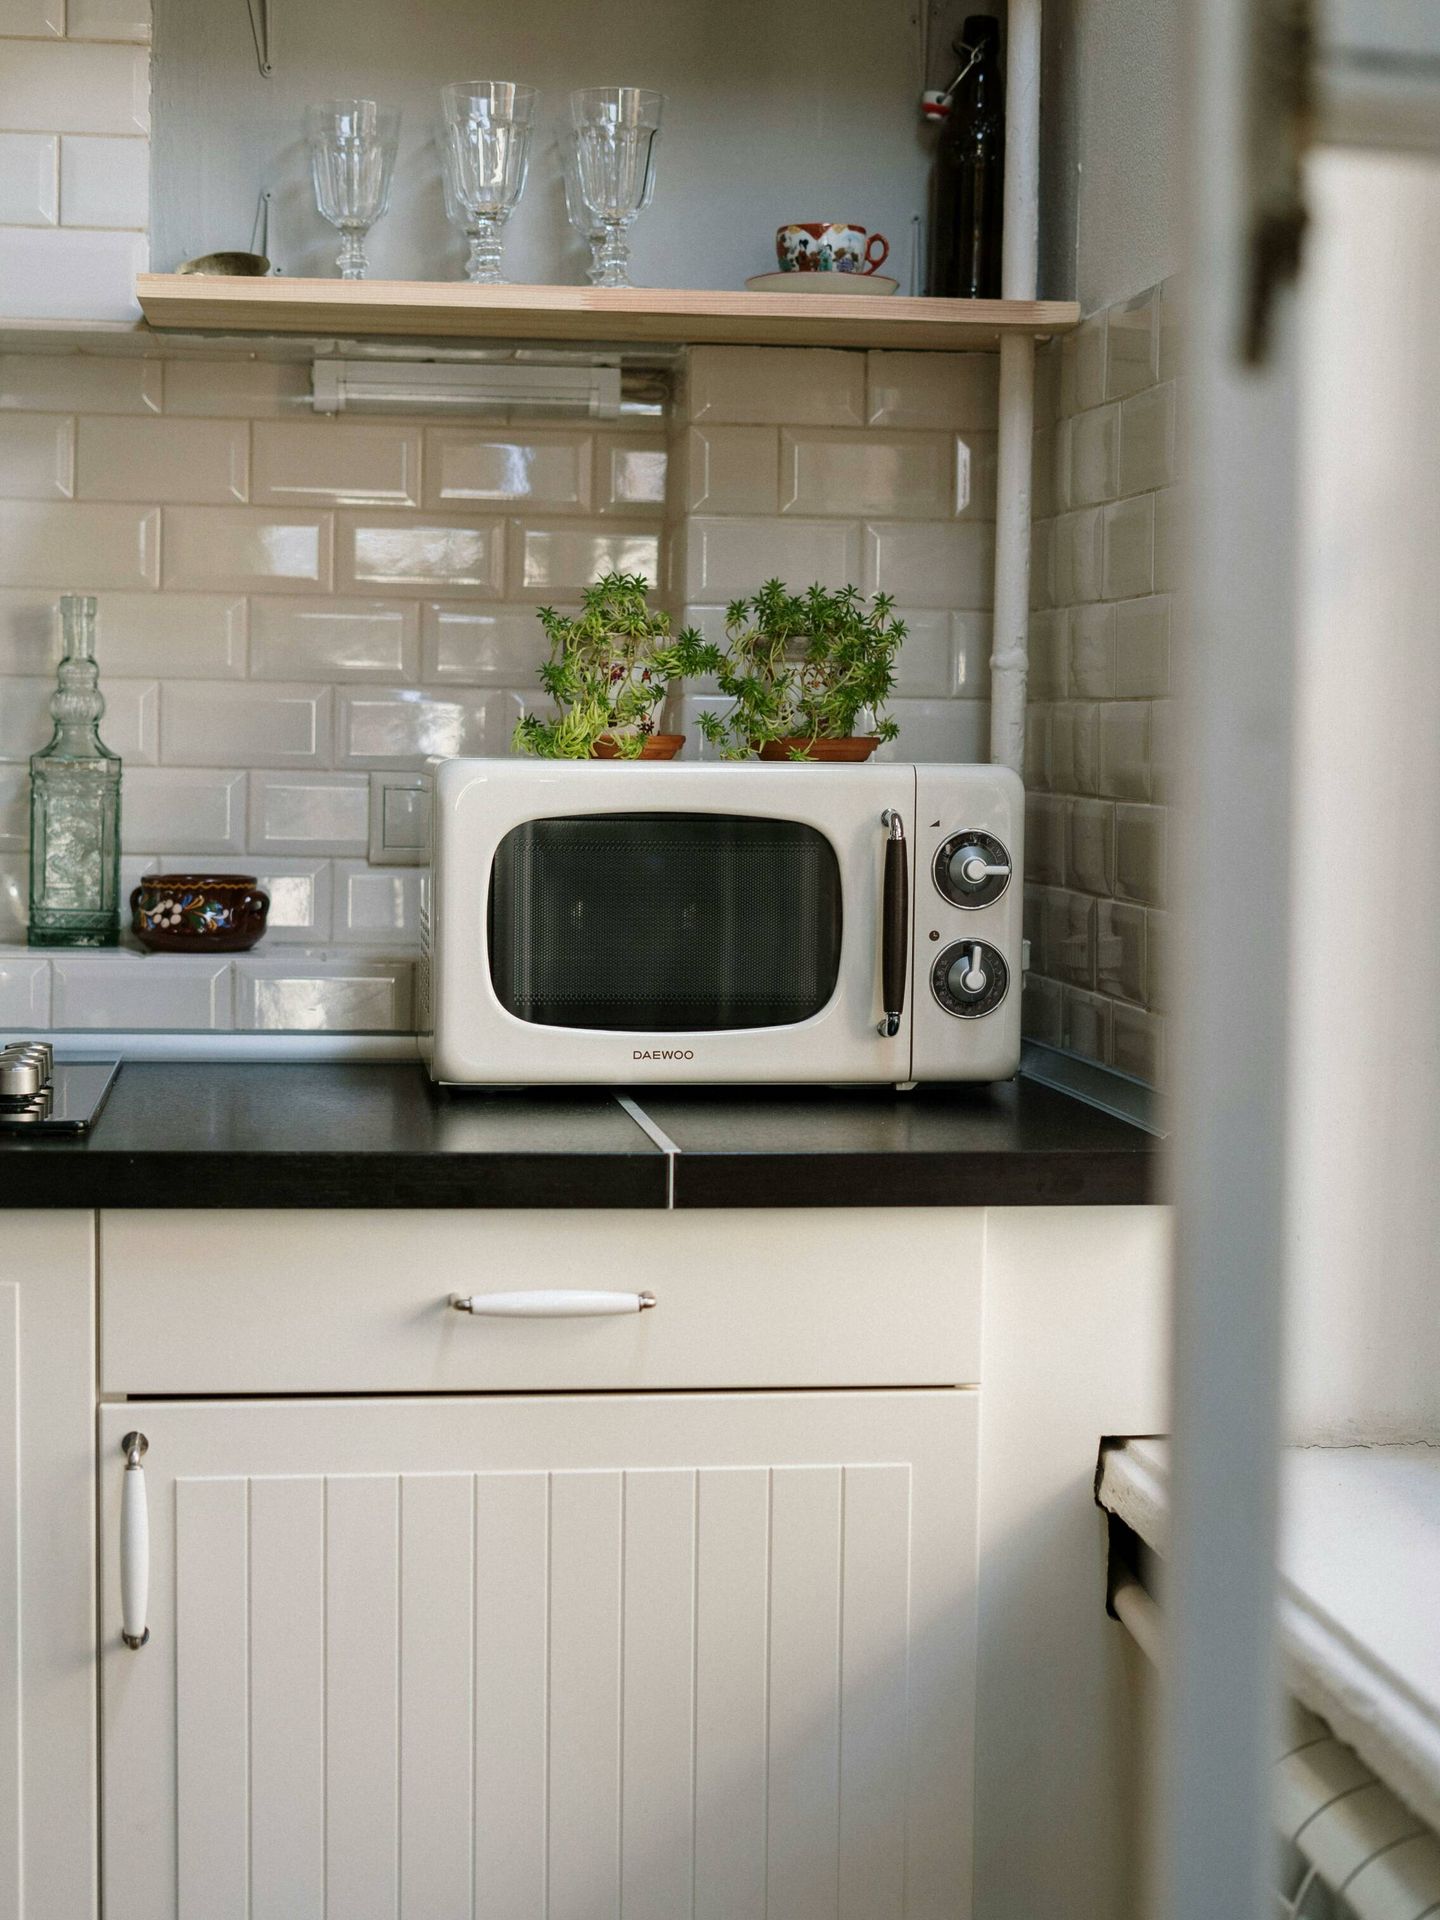 El microondas se ha convertido en un elemento imprescindible en la cocina. (Pexels / cottonbro studio)